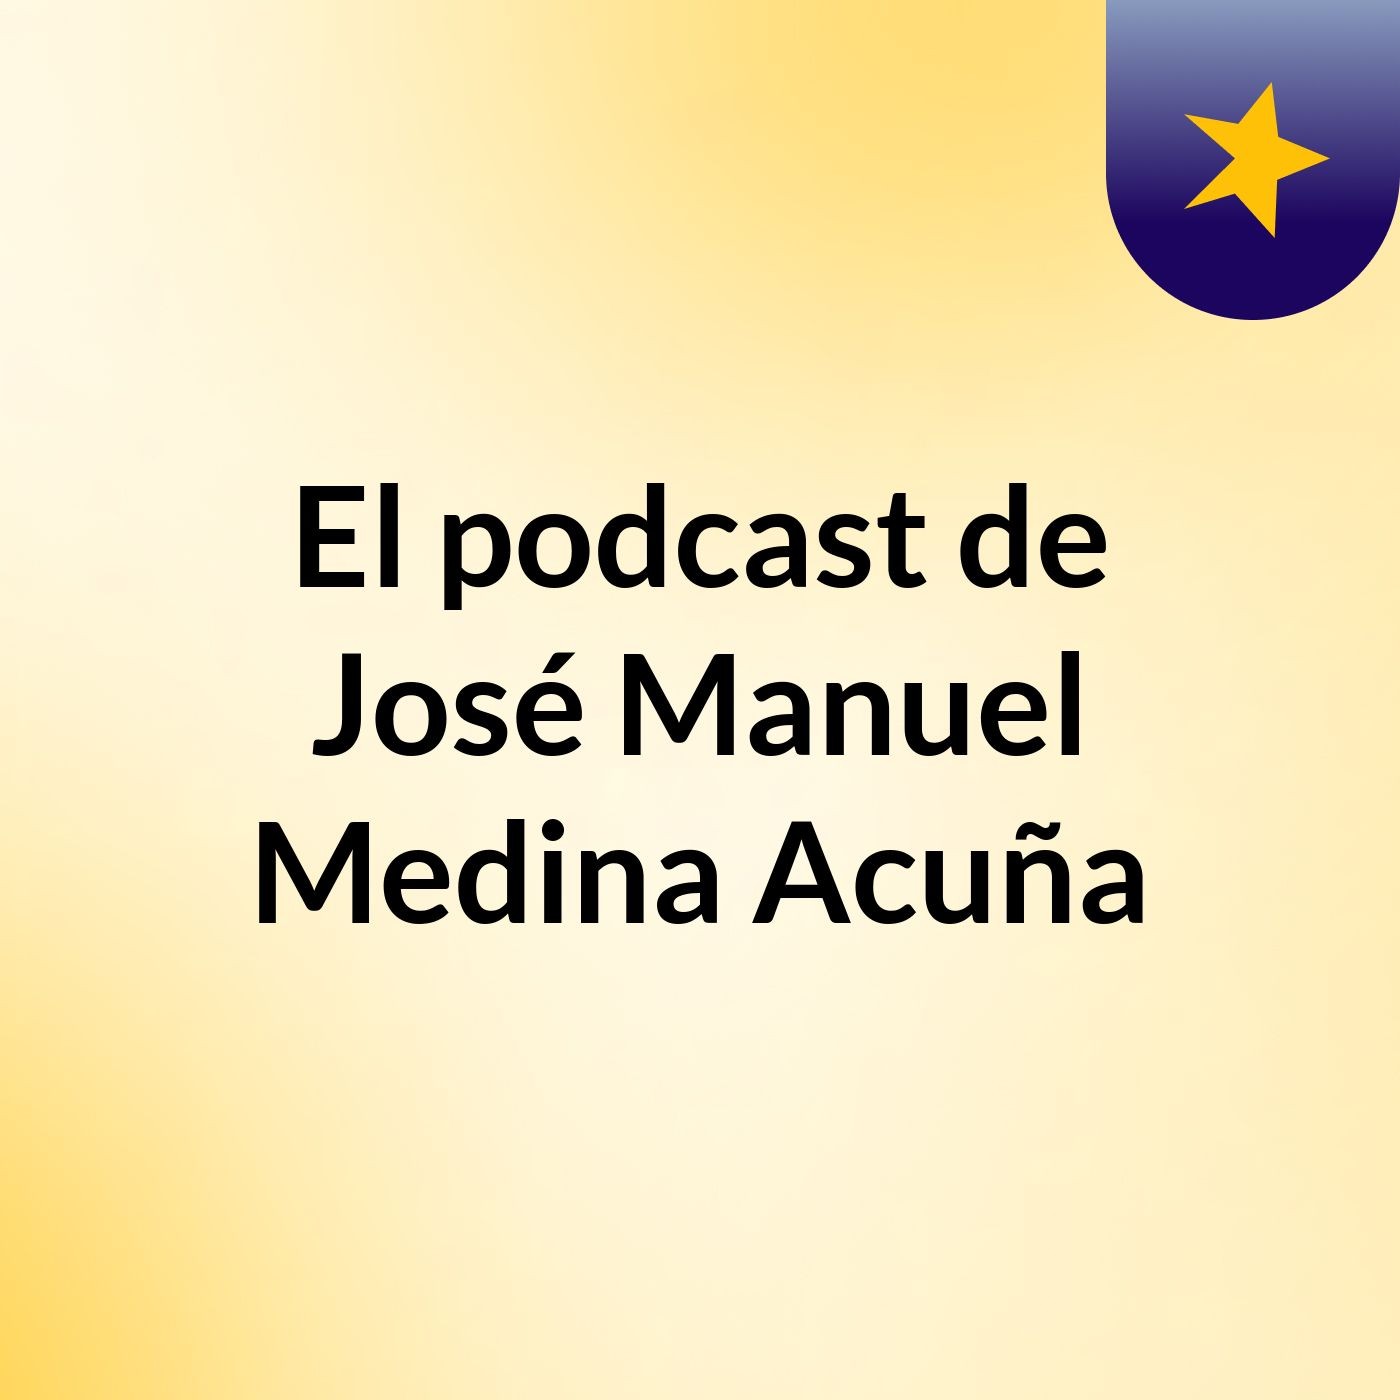 El podcast de José Manuel Medina Acuña